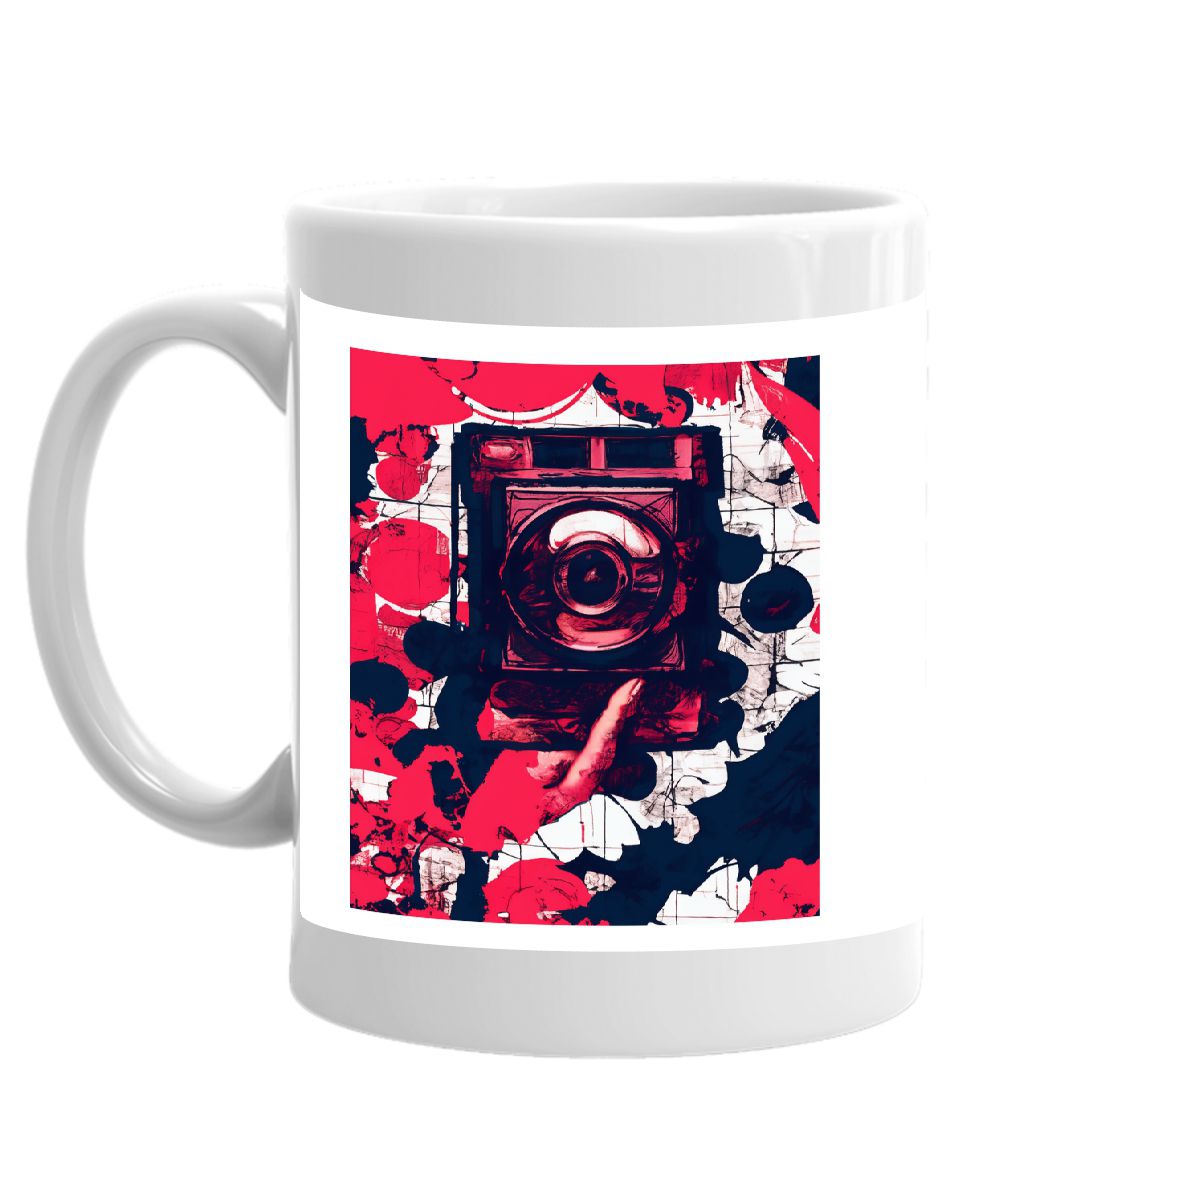 camera and logo mug